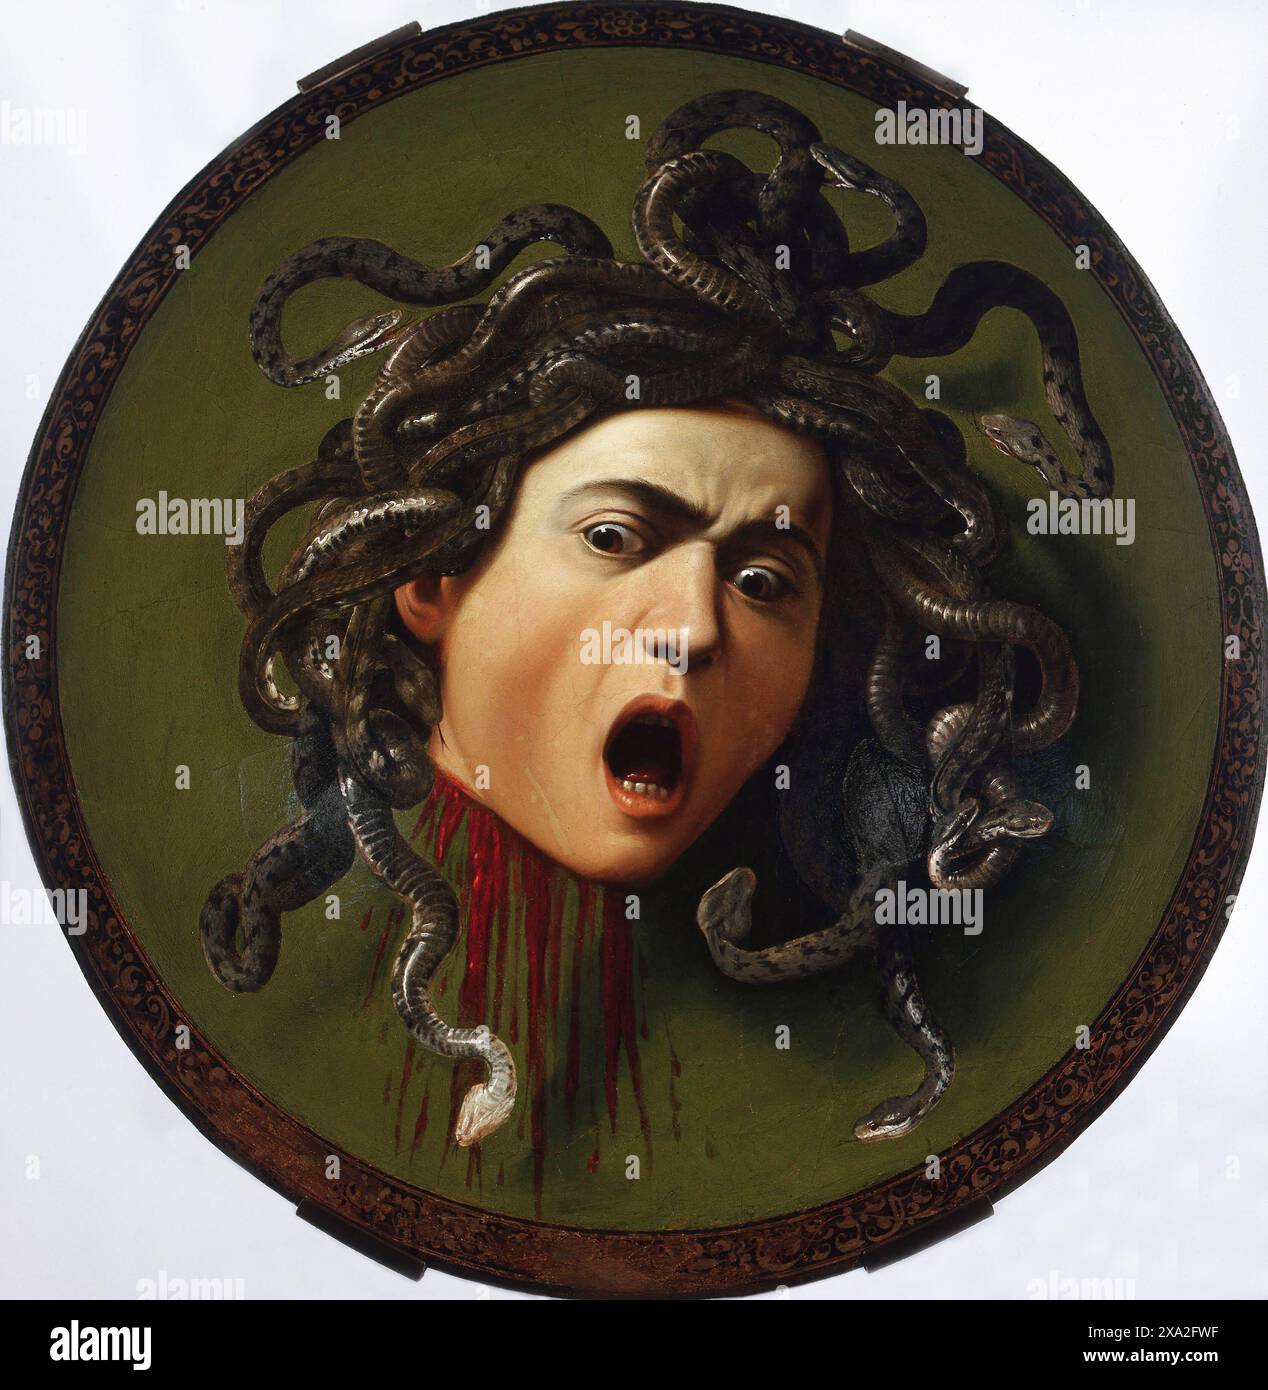 Italien: Medusa als Schild der Athene. Öl auf Leinwand Gemälde von Michelangelo Merisi da Caravaggio (29. September 1571 - 18. Juli 1610), c. 1597. In der griechischen Mythologie war Medusa (griechisch: Μέδουσα, 'Hüterin, Schutzin') eine Gorgon, ein chthonisches Monster und eine Tochter von Phorcys und Ceto. Direkt auf sie zu blicken, würde Zuschauer zu Stein machen. Sie wurde von dem Helden Perseus enthauptet, der ihren Kopf danach als Waffe benutzte, bis er ihn der Göttin Athene gab, um ihn auf ihren Schild zu setzen. In der klassischen Antike erschien das Bild des Kopfes der Medusa in der böswilligen Abwendung als Gorgoneion bekannt. Stockfoto